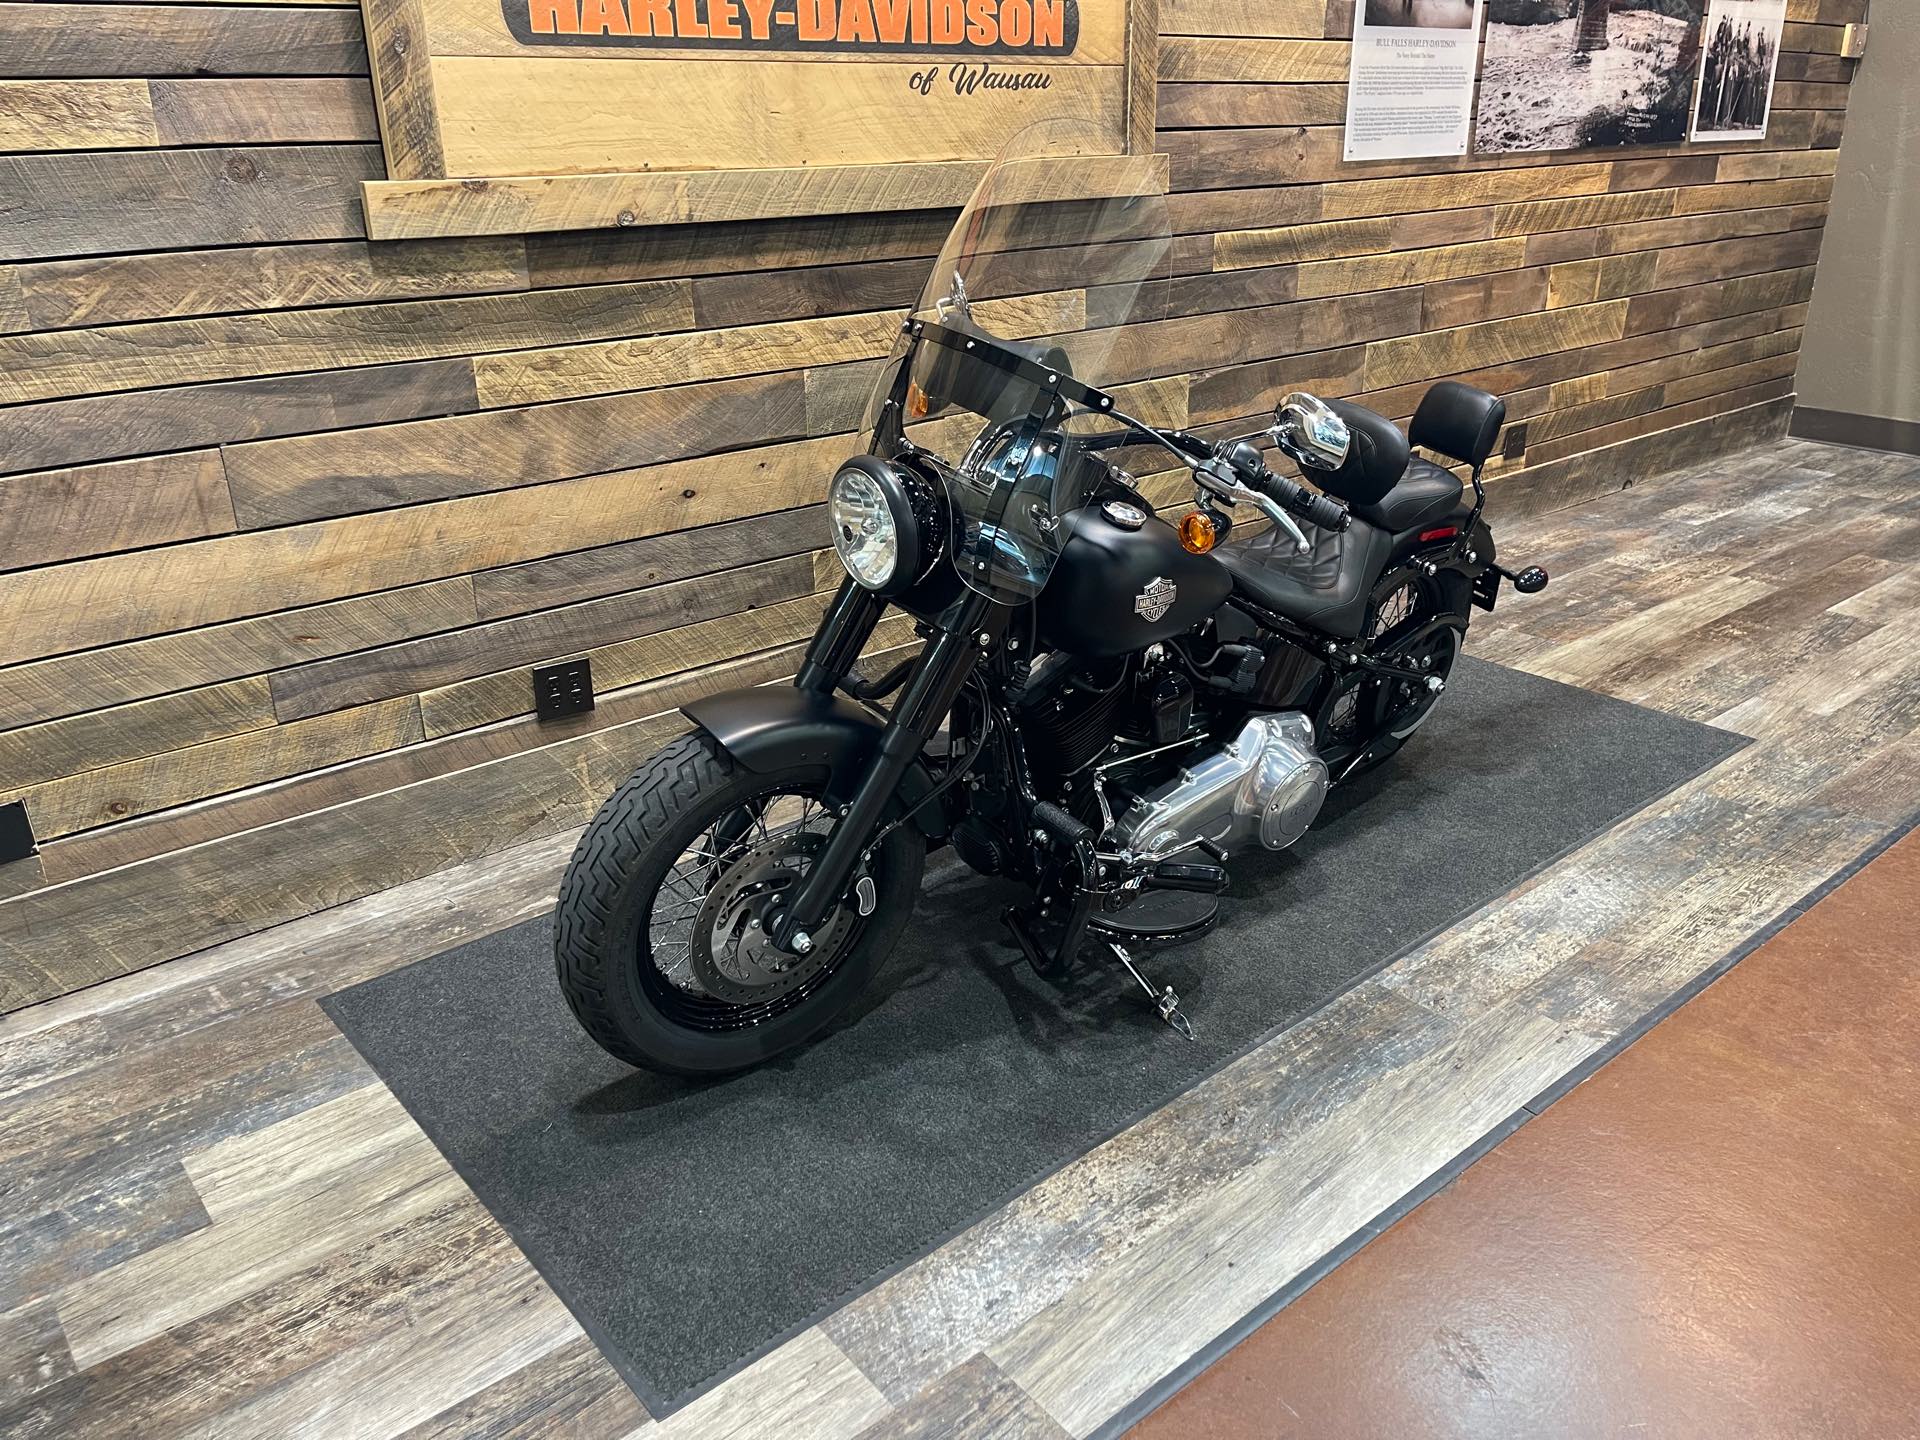 2017 Harley-Davidson Softail Slim at Bull Falls Harley-Davidson